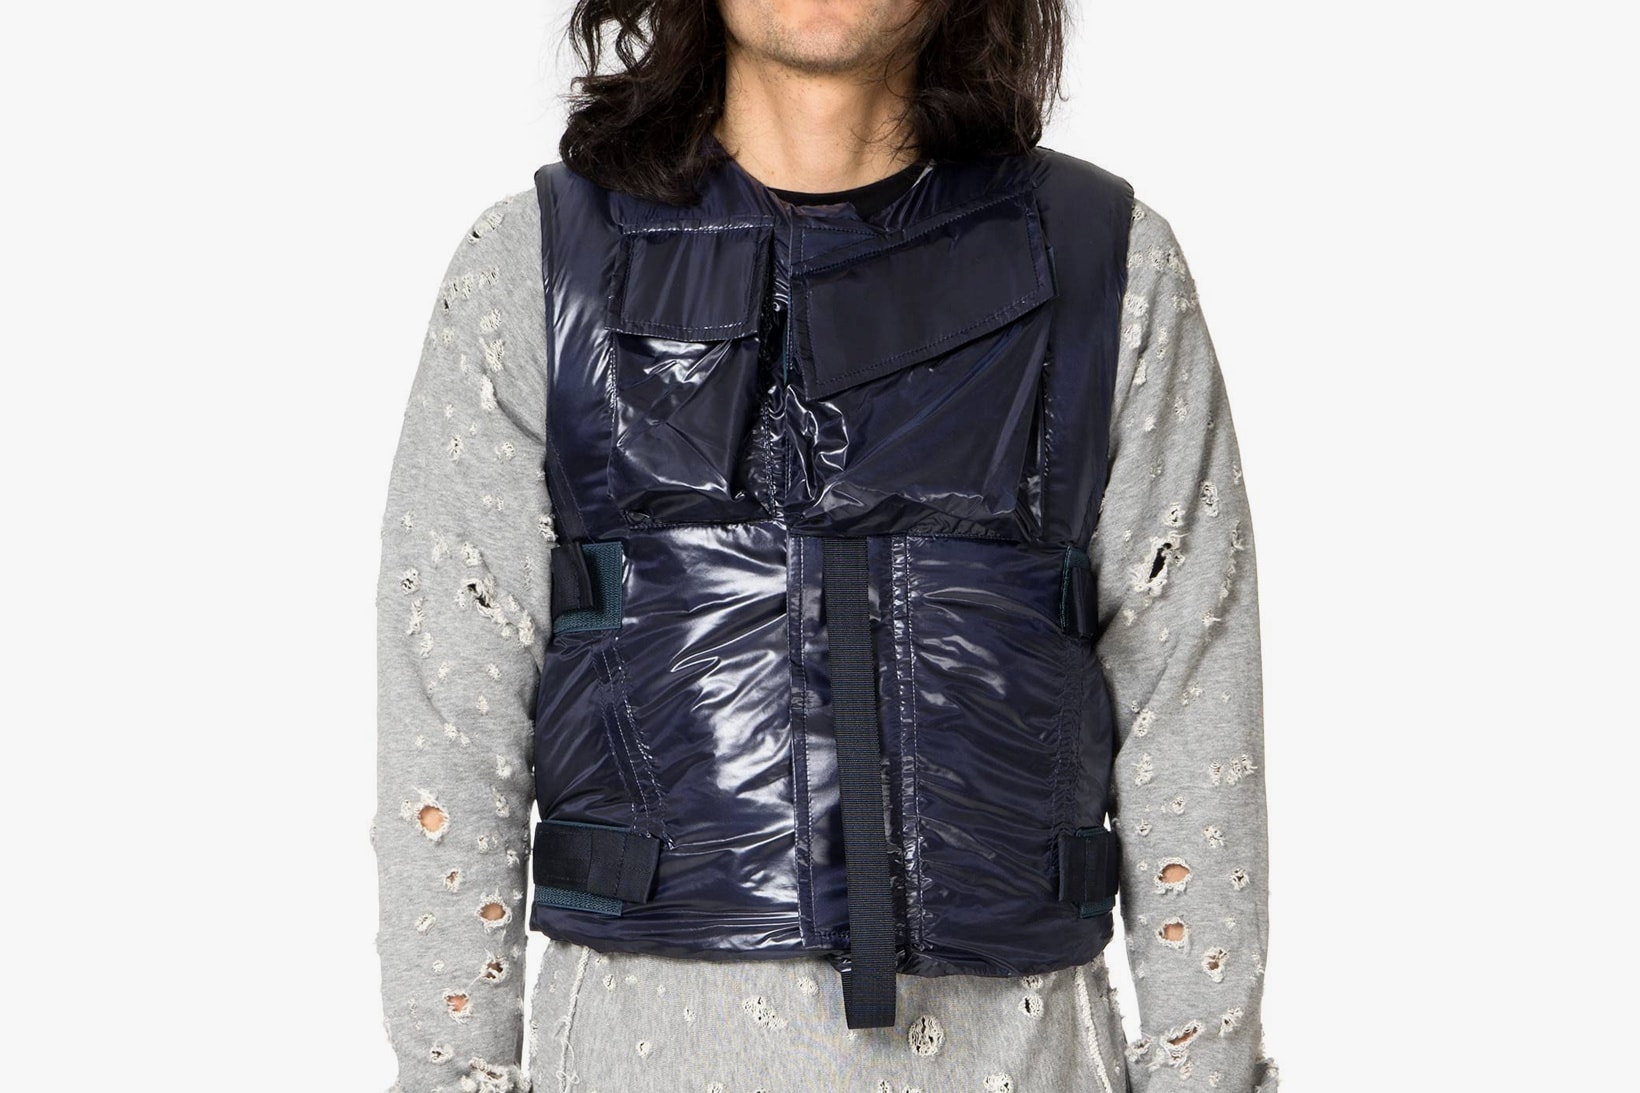 TAKAHIROMIYASHITA the SoloIst. Bullet Proof Vests